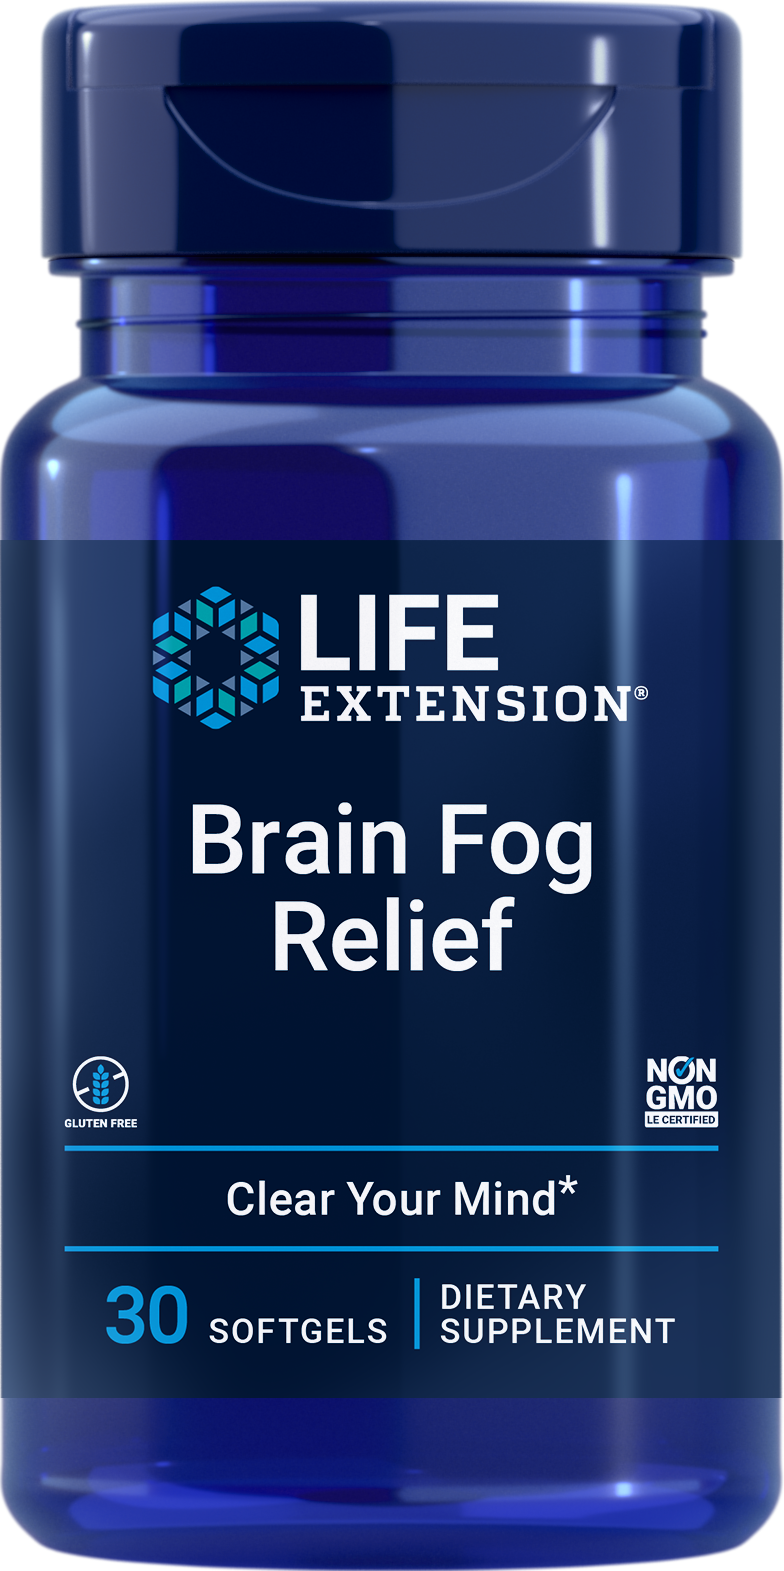 Life Extension Brain Fog Relief, 30 Weichkapseln zur Steigerung der kognitiven Leistung und Wiederherstellung der geistigen Klarheit und Aufmerksamkeit.